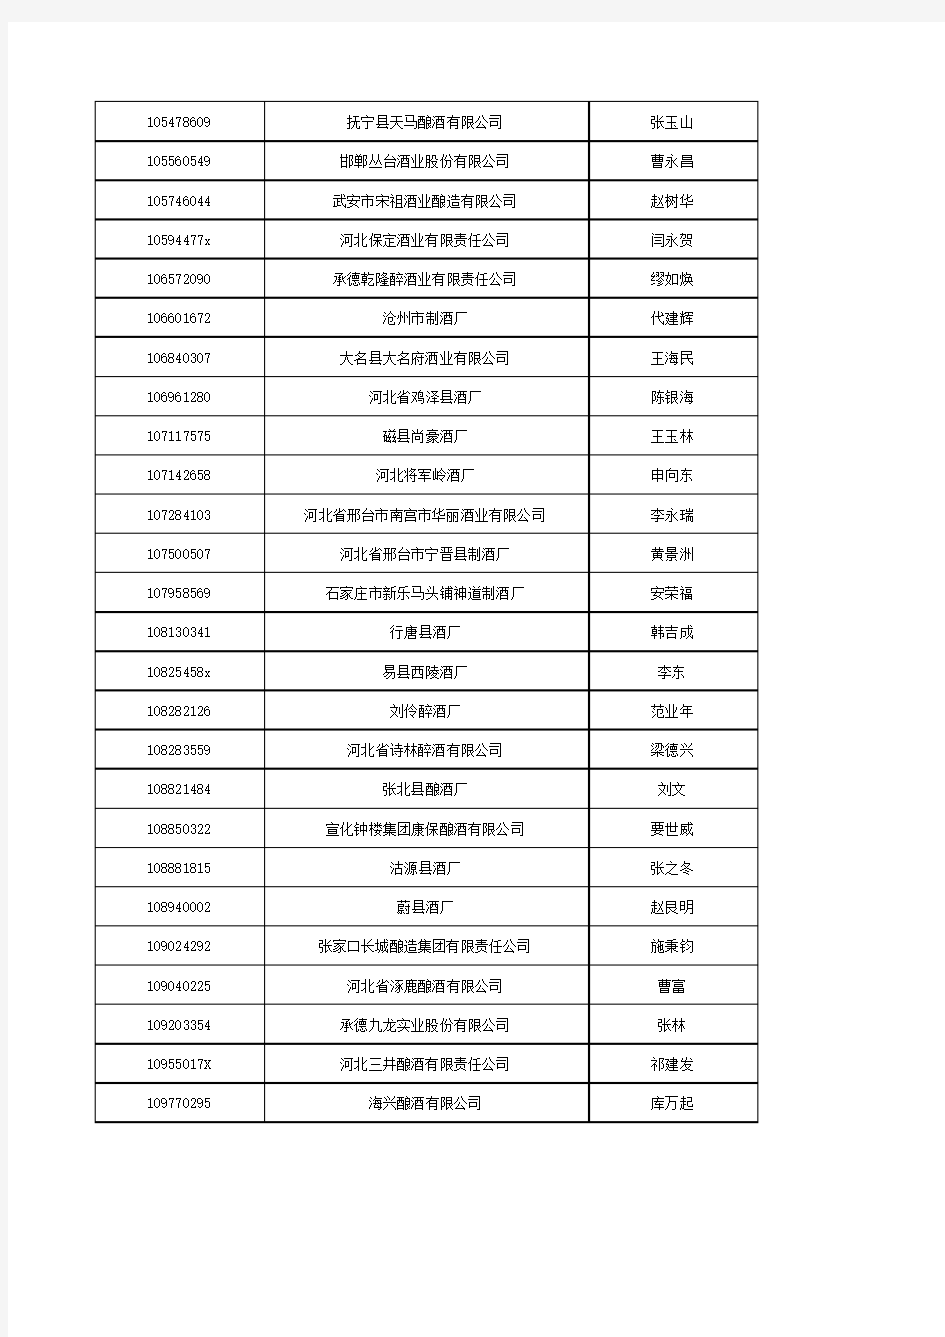 1998-2009年中国工业企业(年销售额500万RMB)数据样本